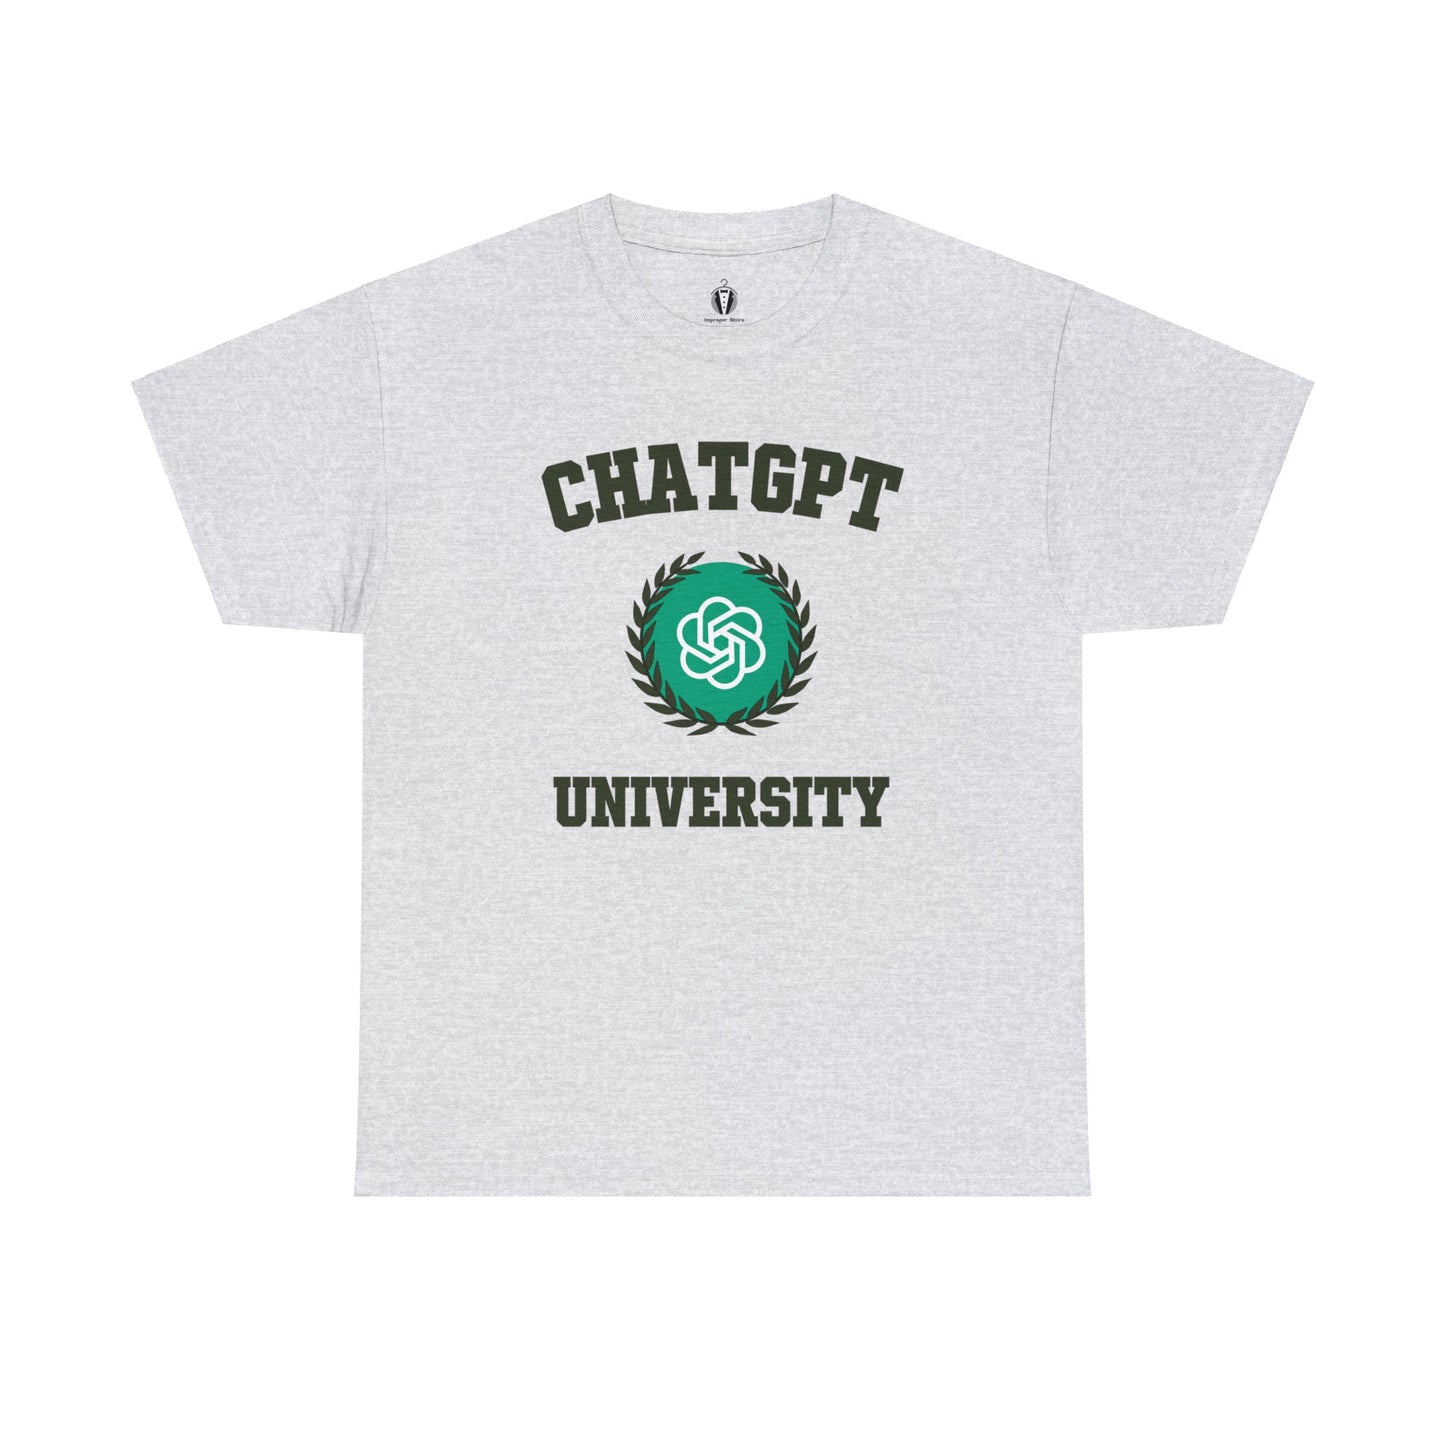 "ChatGPT University" - Tee